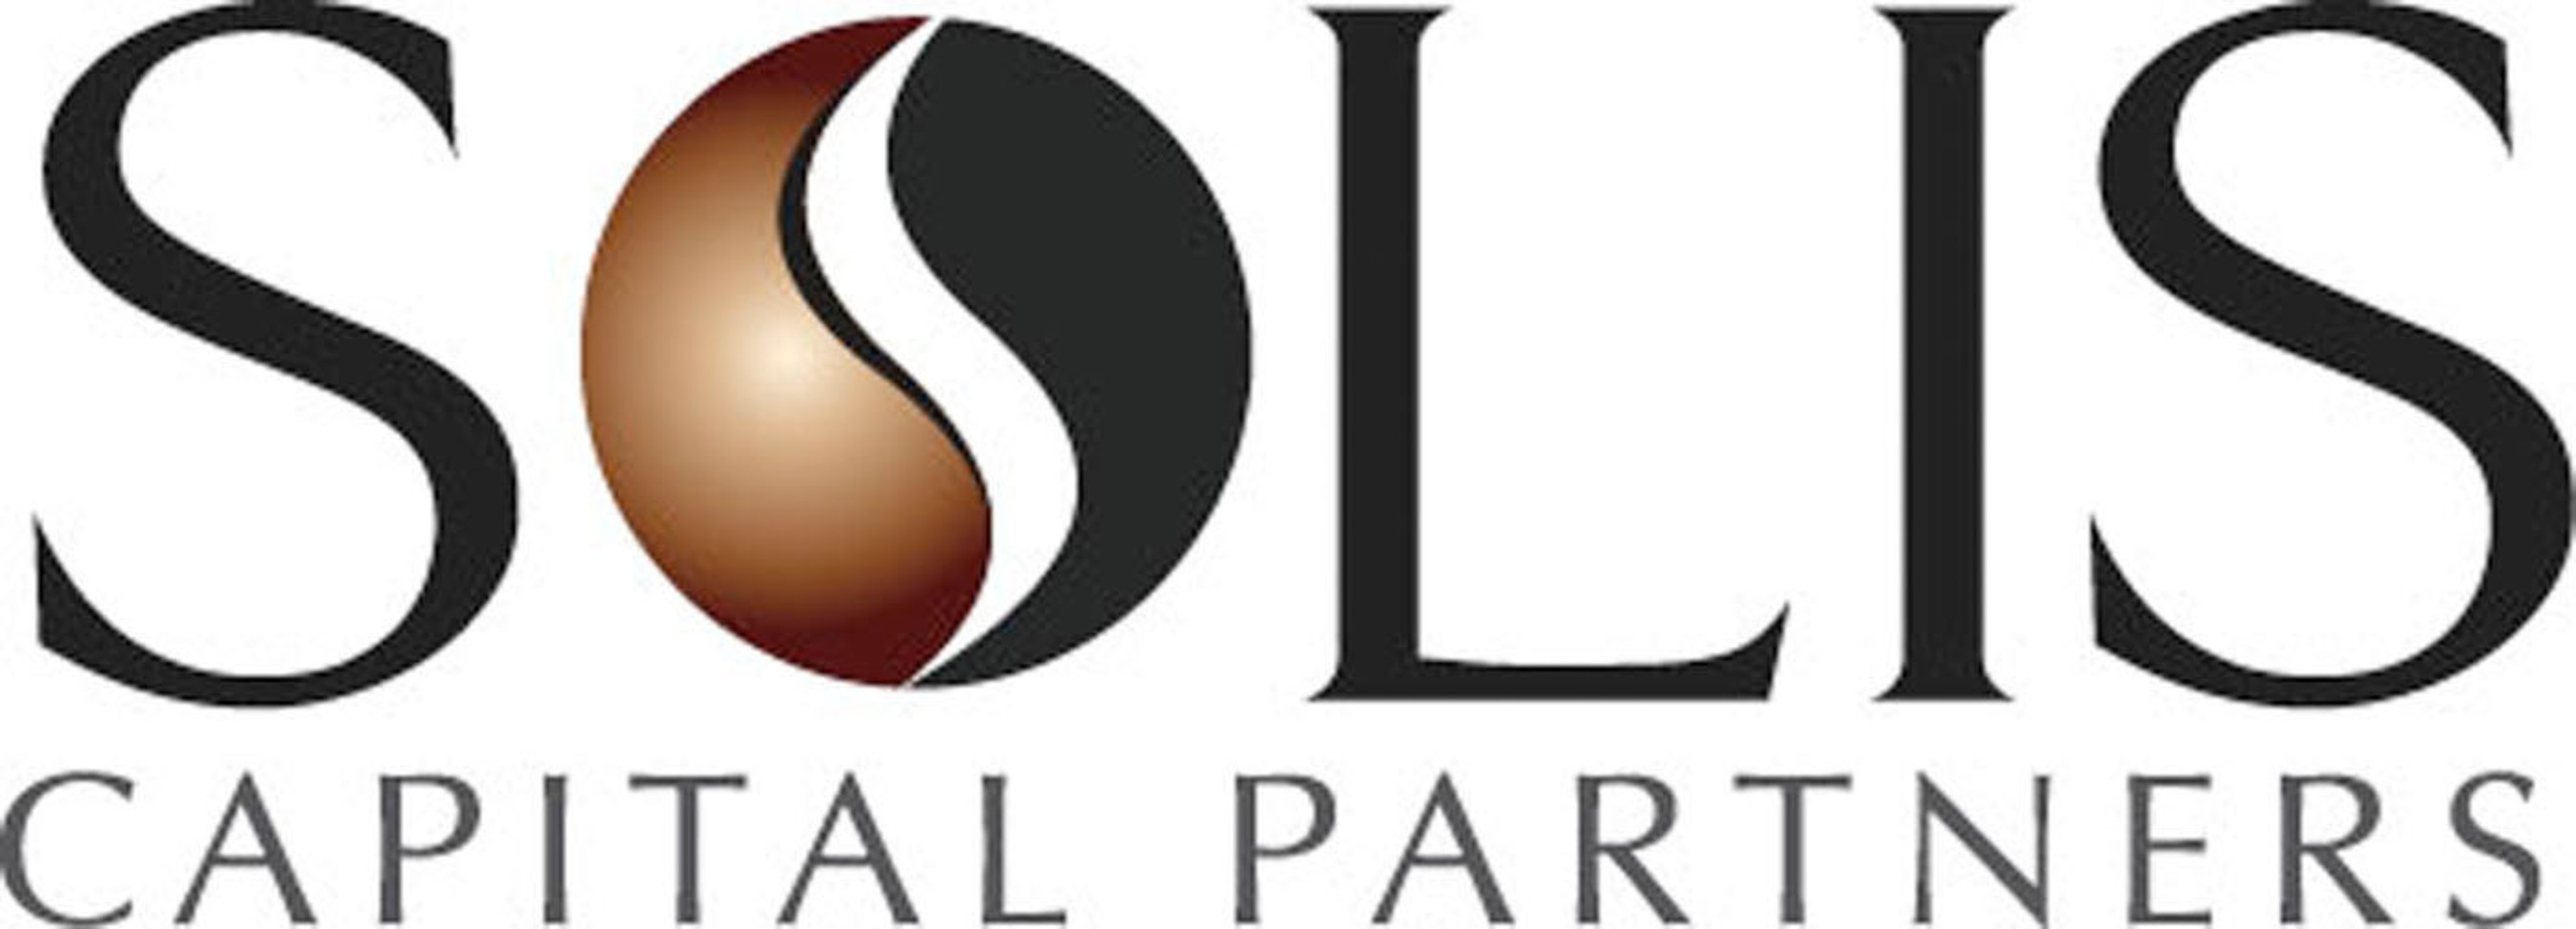 Solis Capital Partners Logo (PRNewsFoto/Solis Capital Partners) (PRNewsFoto/)